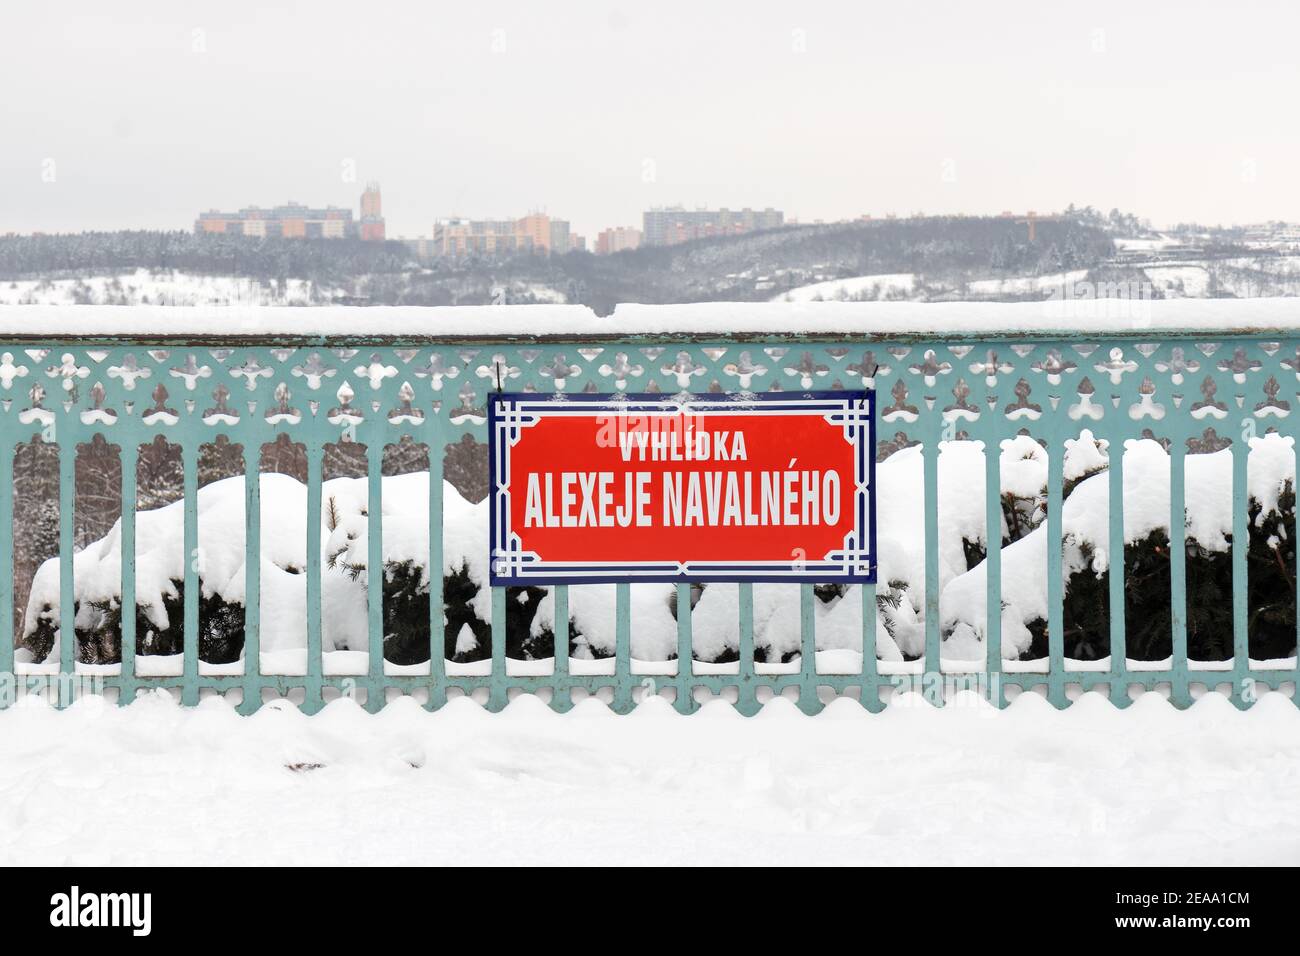 PRAG - Februar 8: Inoffizieller Name eines Aussichtspunktes, der dem russischen Oppositionspolitiker Alexei Nawalny im Königlichen Wildreservat in der gewidmet ist Stockfoto